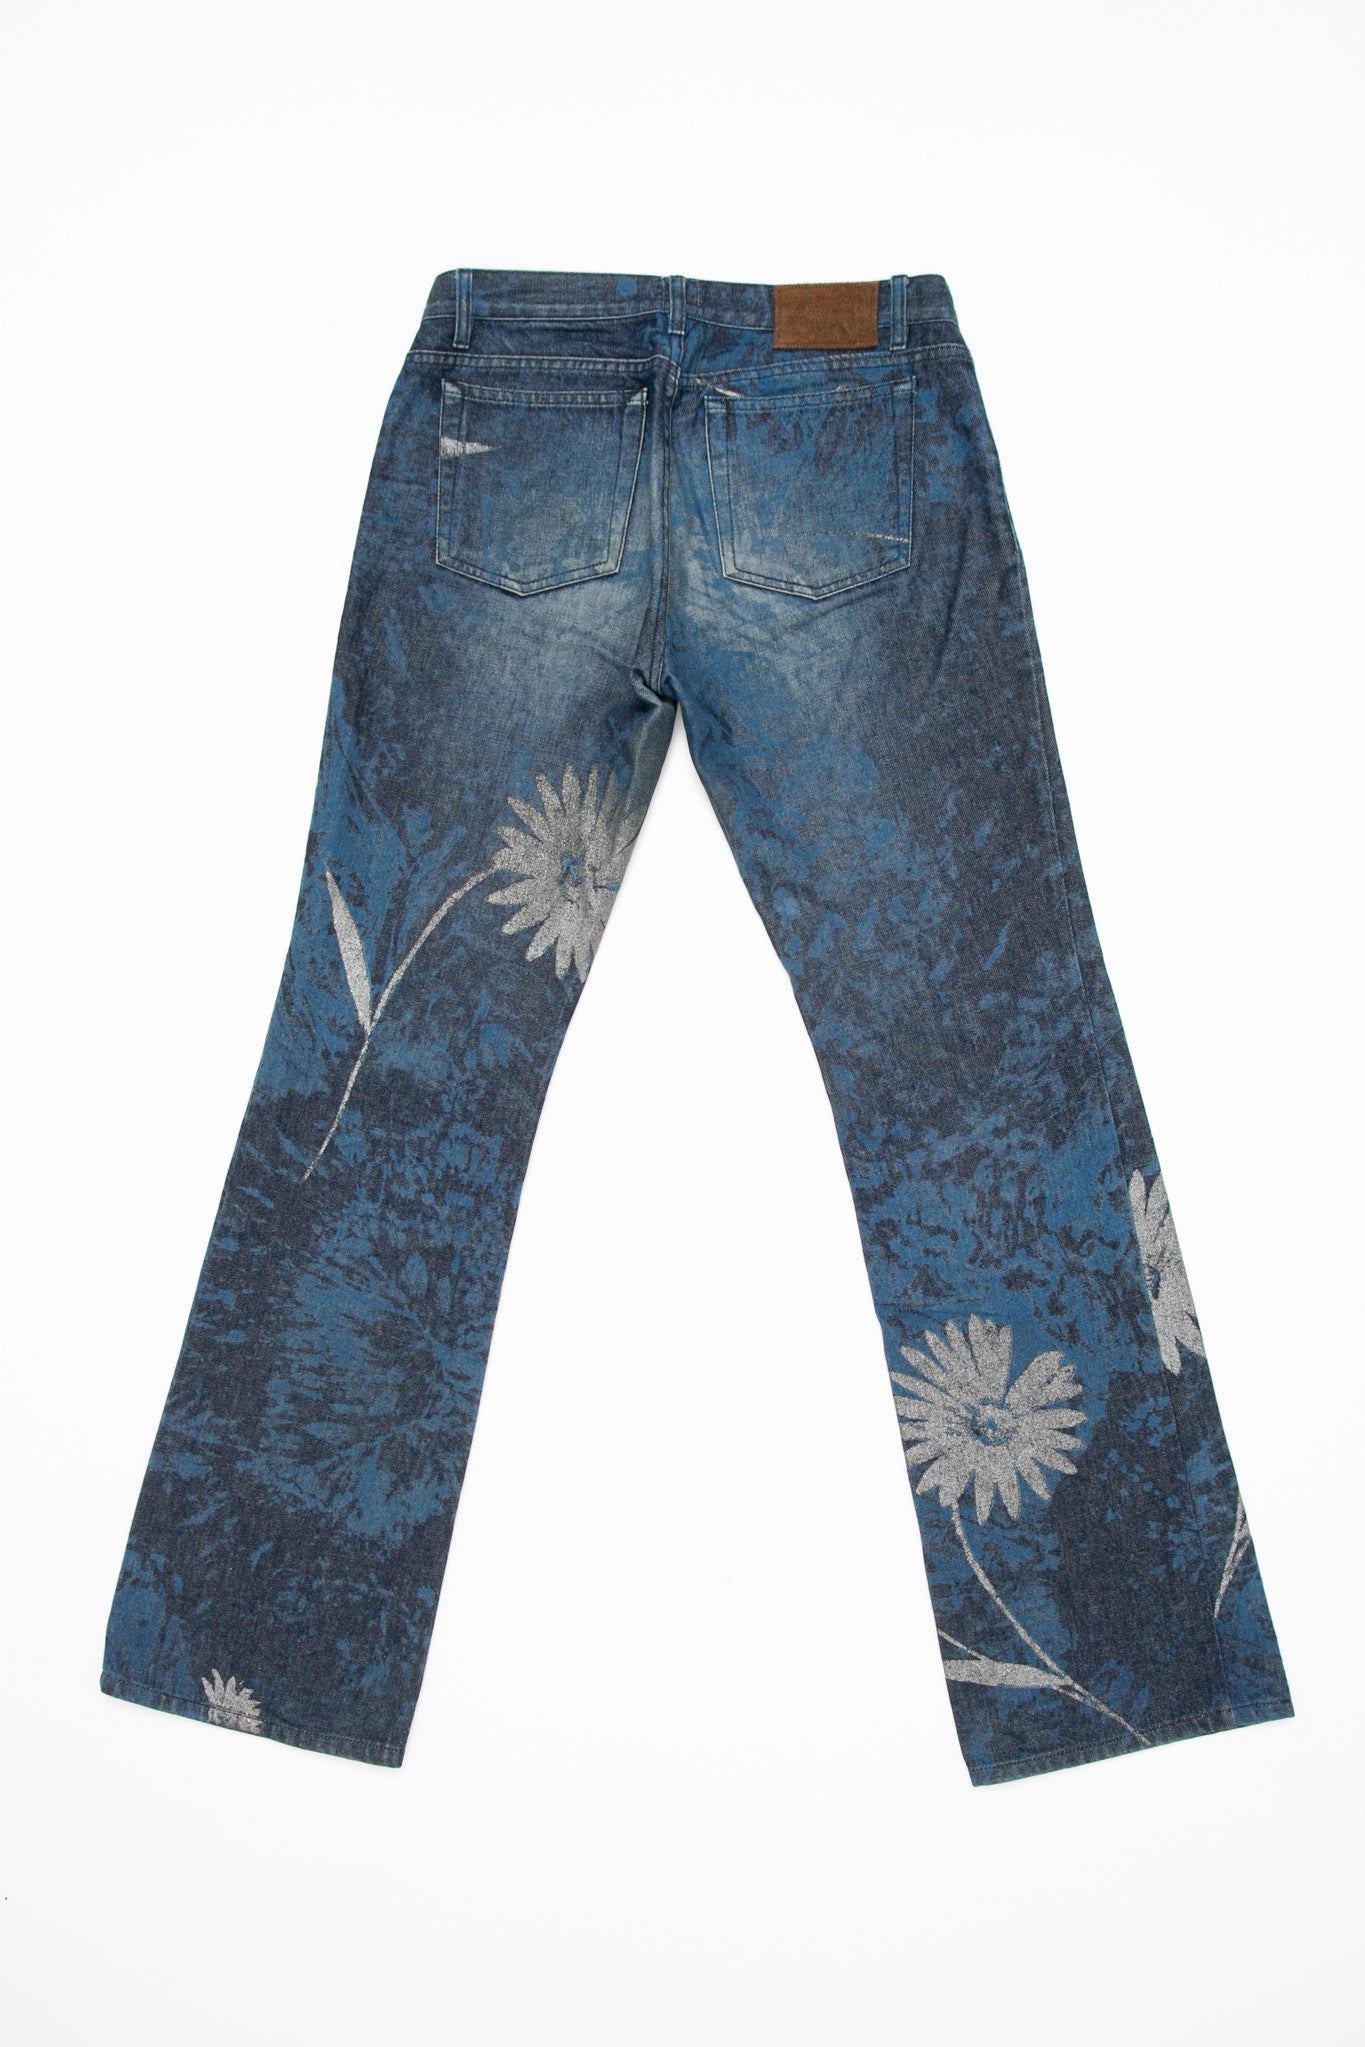 Cavalli Blue Floral Jeans